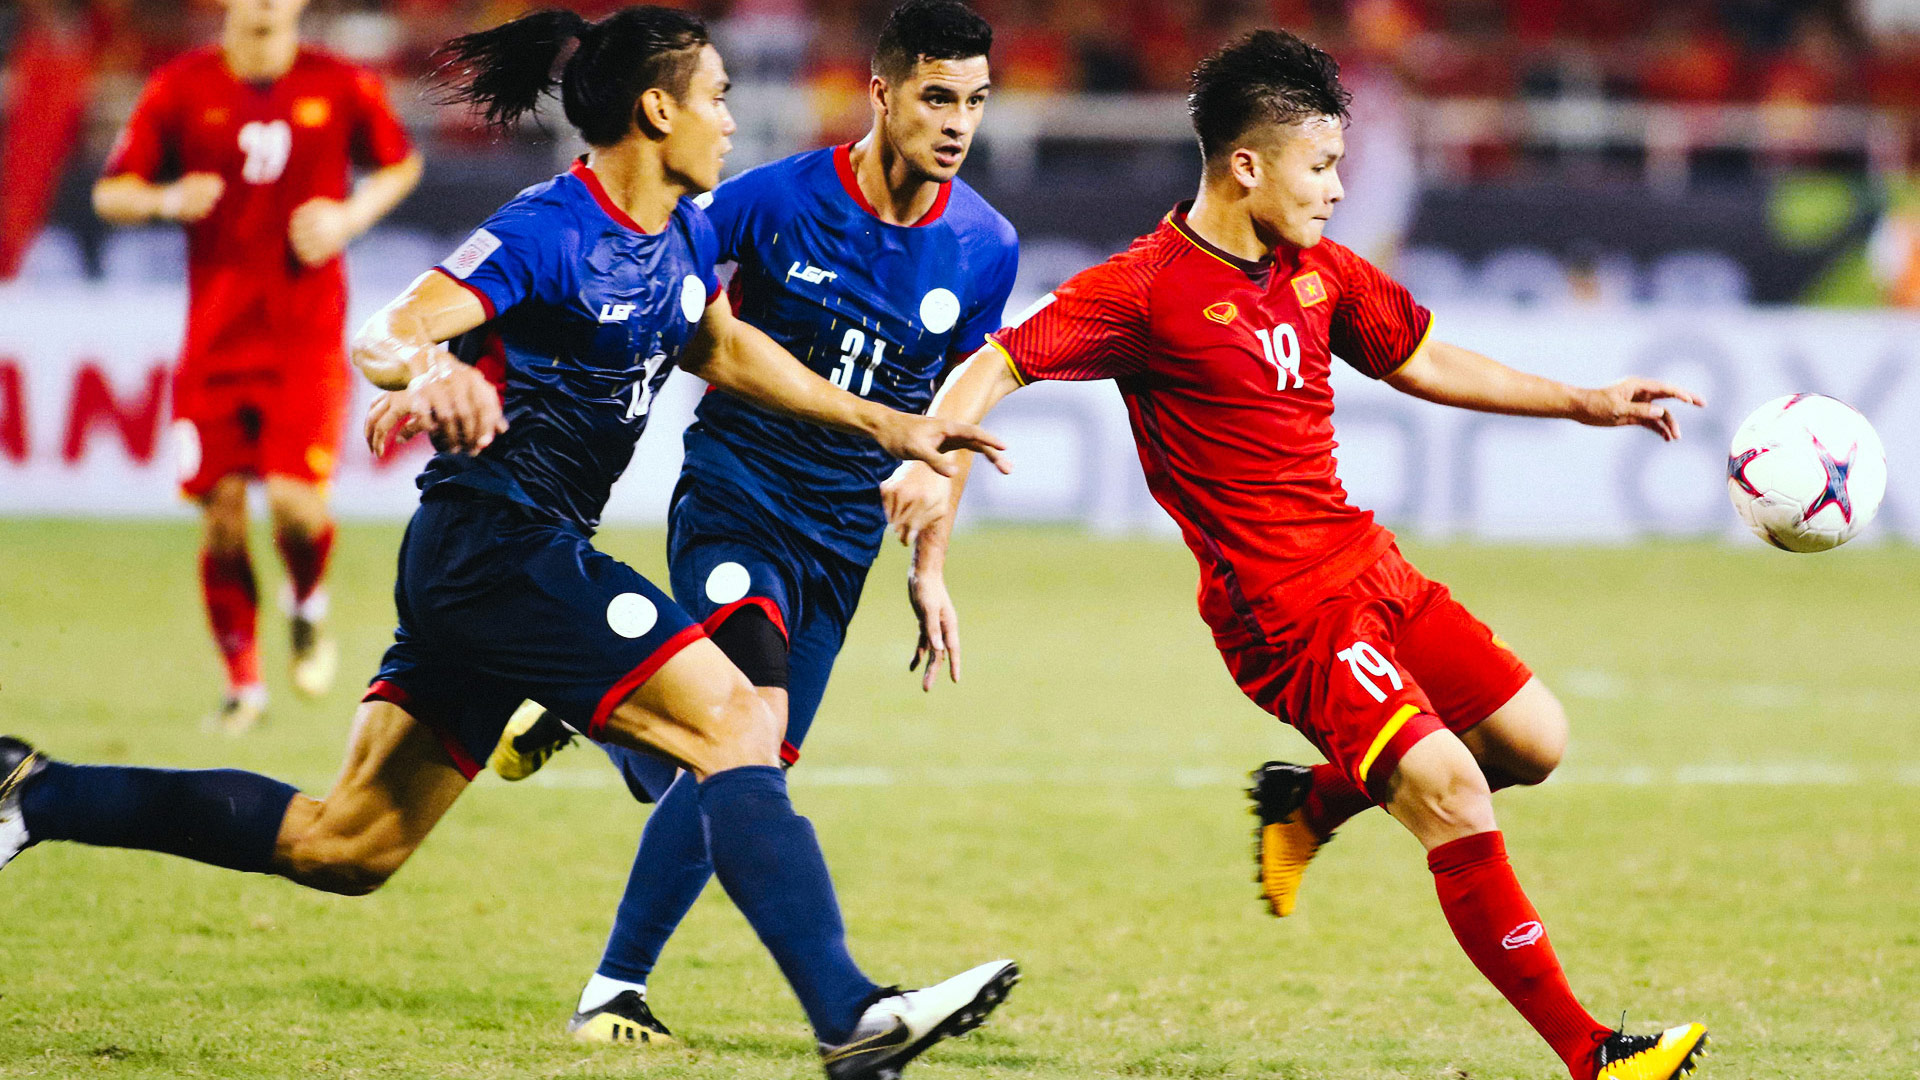 Quang Hải – Ngôi sao trẻ & 2 khoảnh khắc kỳ diệu bóng đá Việt Nam - 5